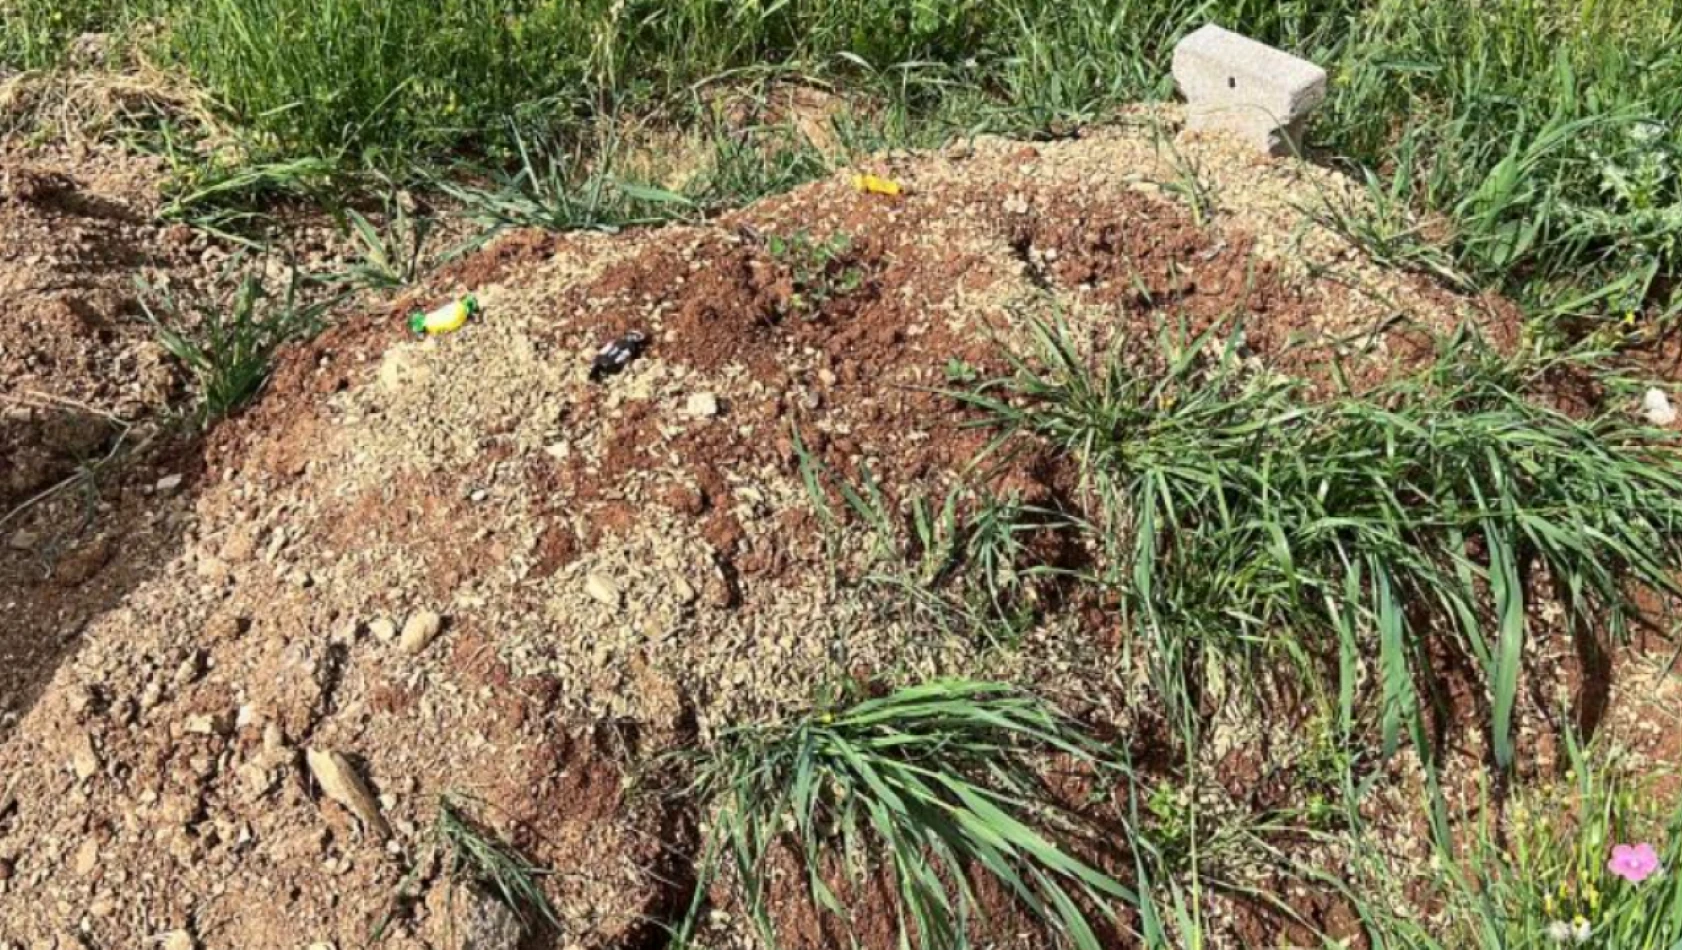 Kahramanmaraş'taki olayda küçük kızın mezarına bayram şekeri bırakıldı...